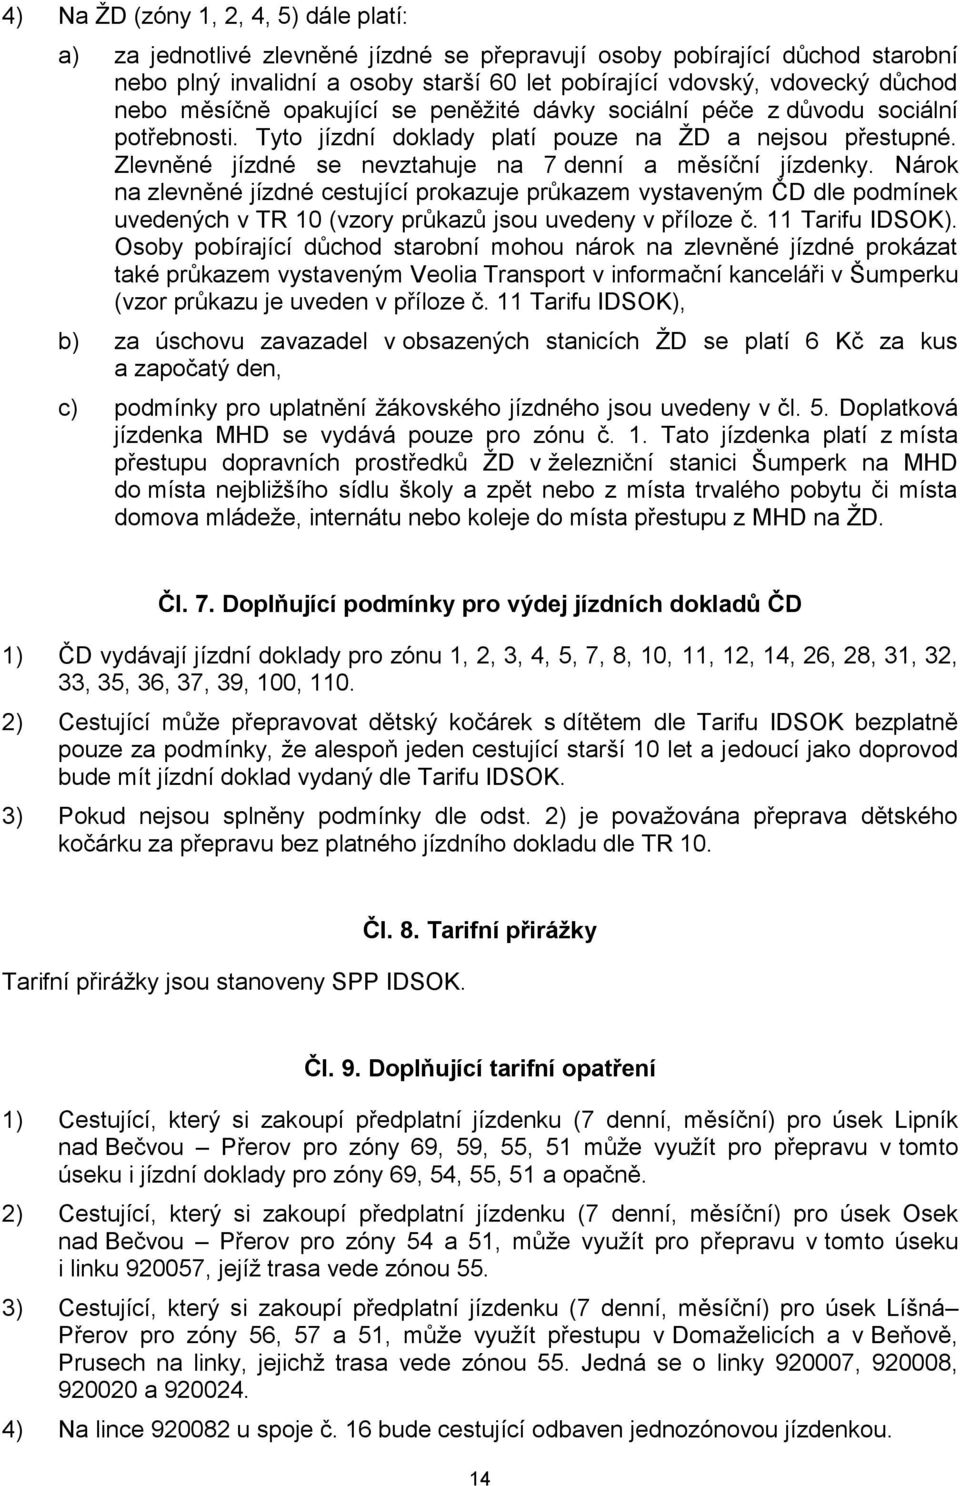 Nárok na zlevněné cestující prokazuje průkazem vystaveným ČD dle podmínek uvedených v TR 10 (vzory průkazů jsou uvedeny v příloze č. 11 Tarifu IDSOK).